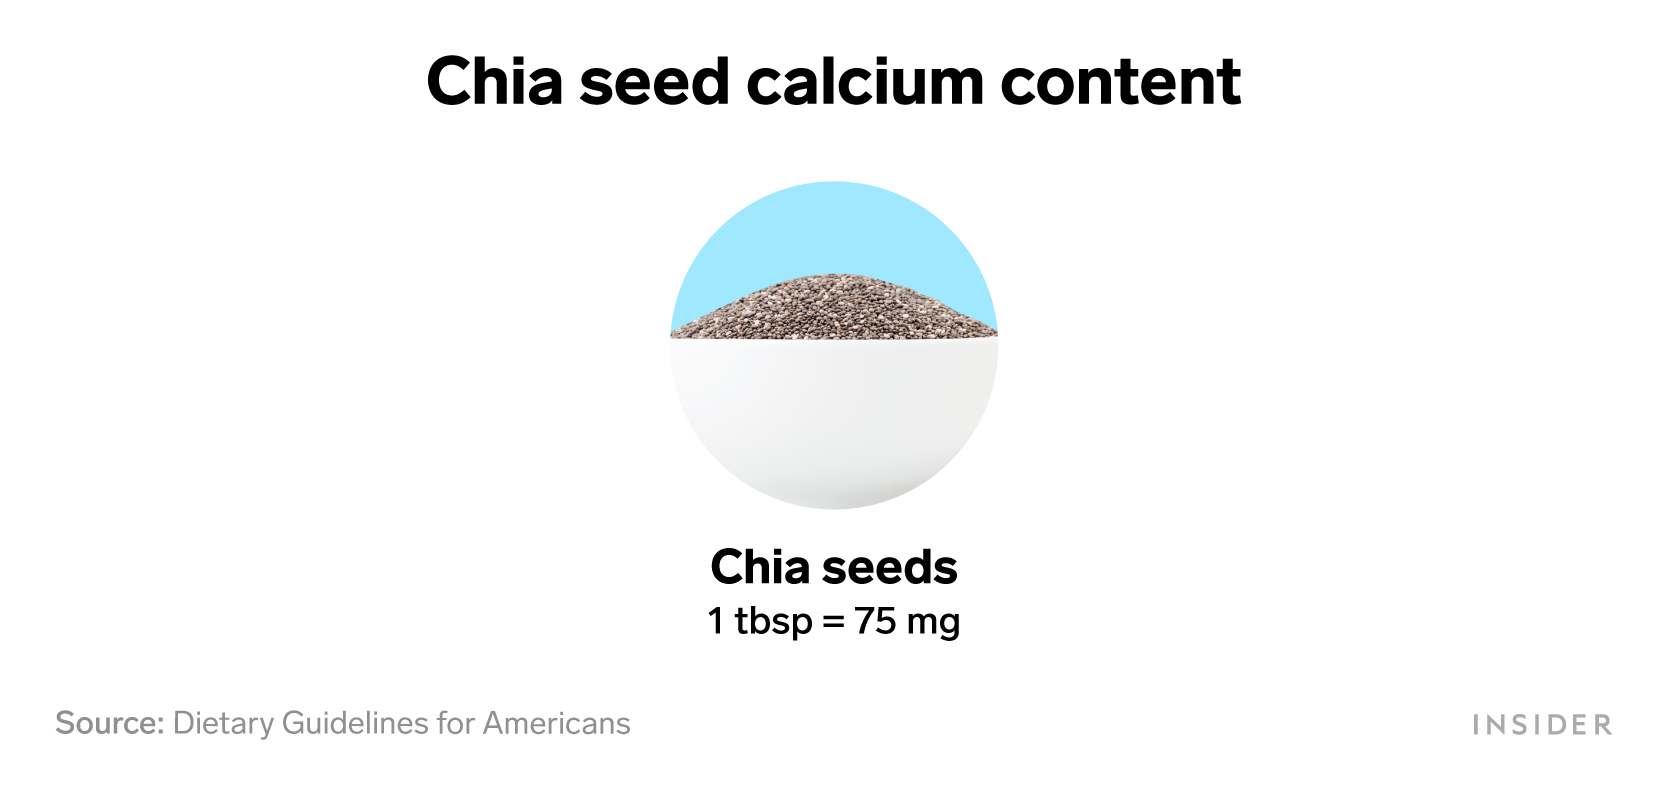 Foods that are rich in calcium: Chia seed calcium content